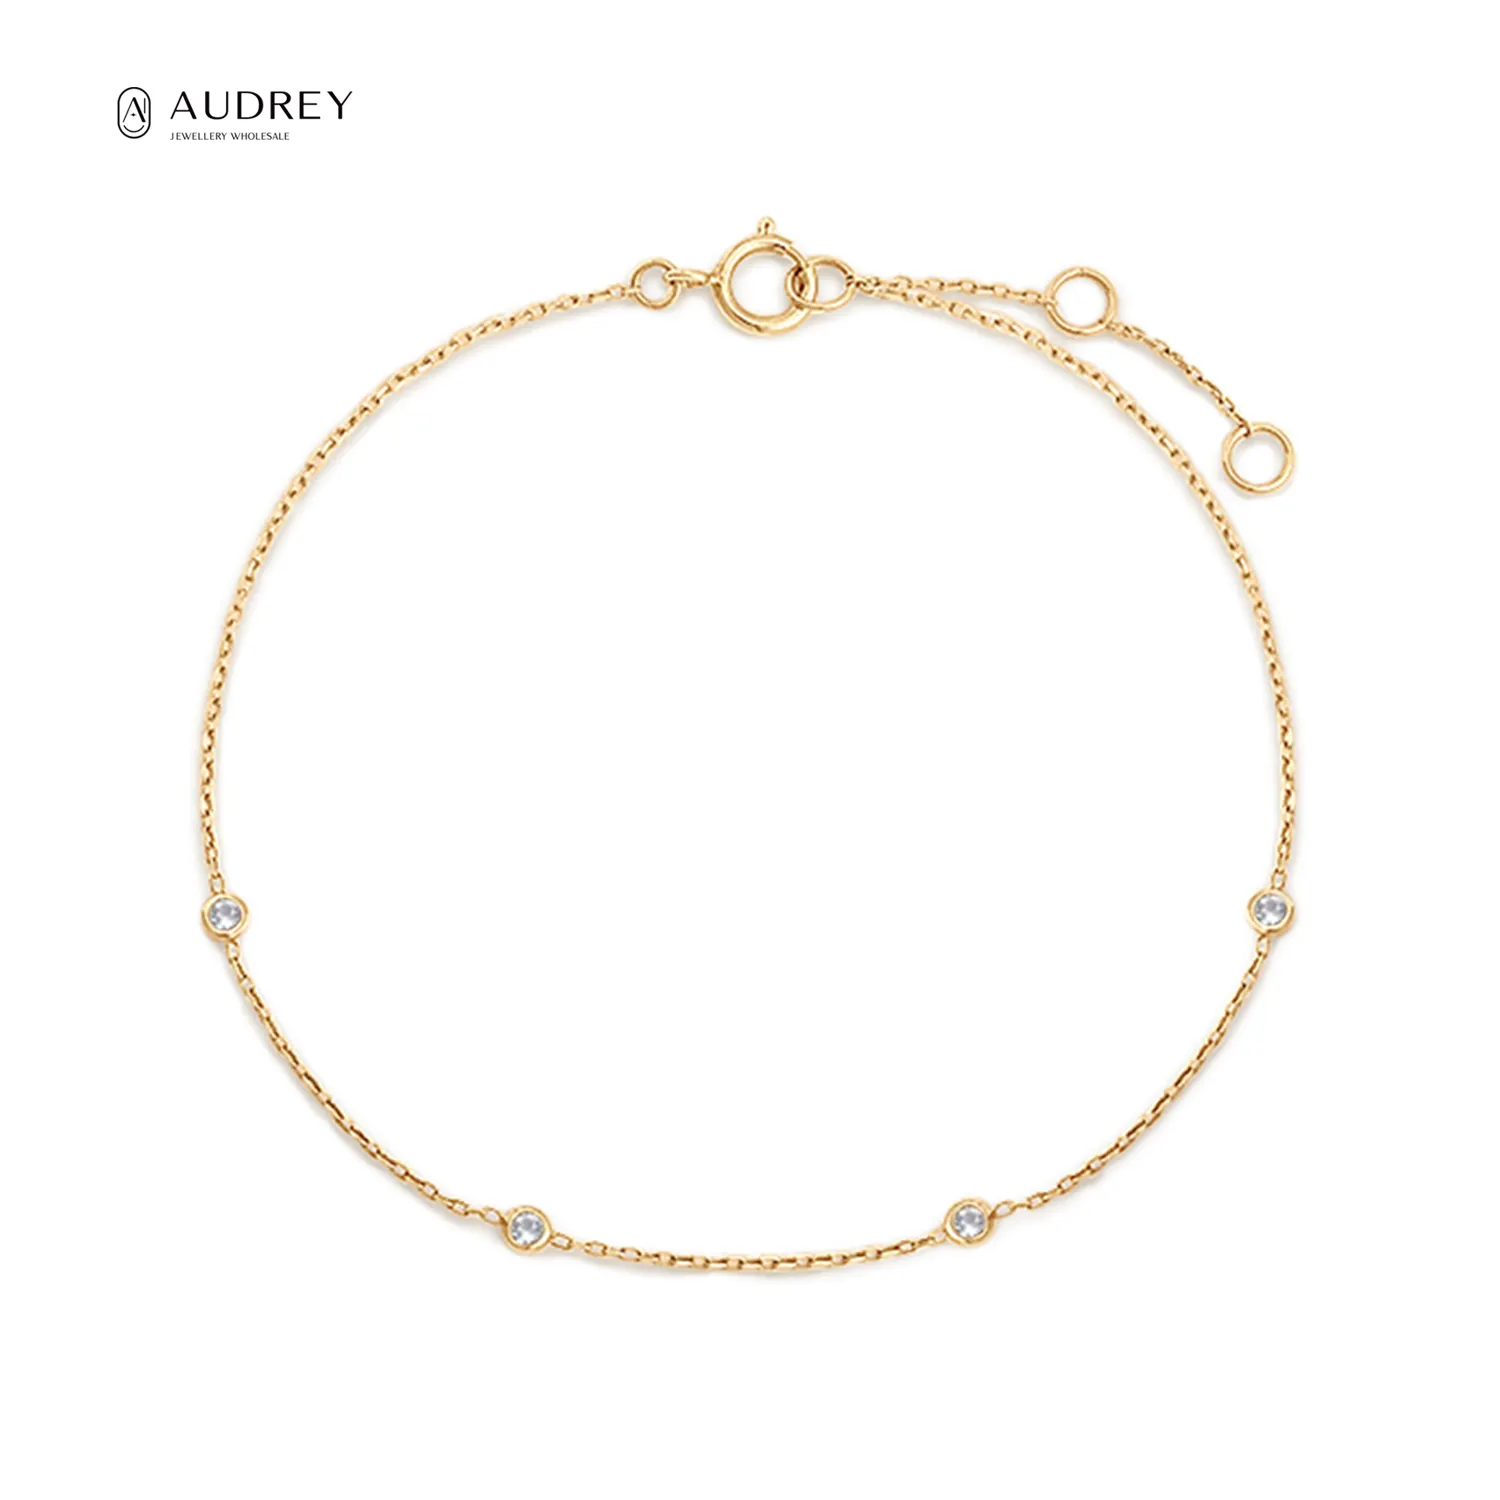 Audrey Real Gold Bijoux Brazalete 14K Solid Gold Jewelri Diamond Fine Jewelry Bracelet